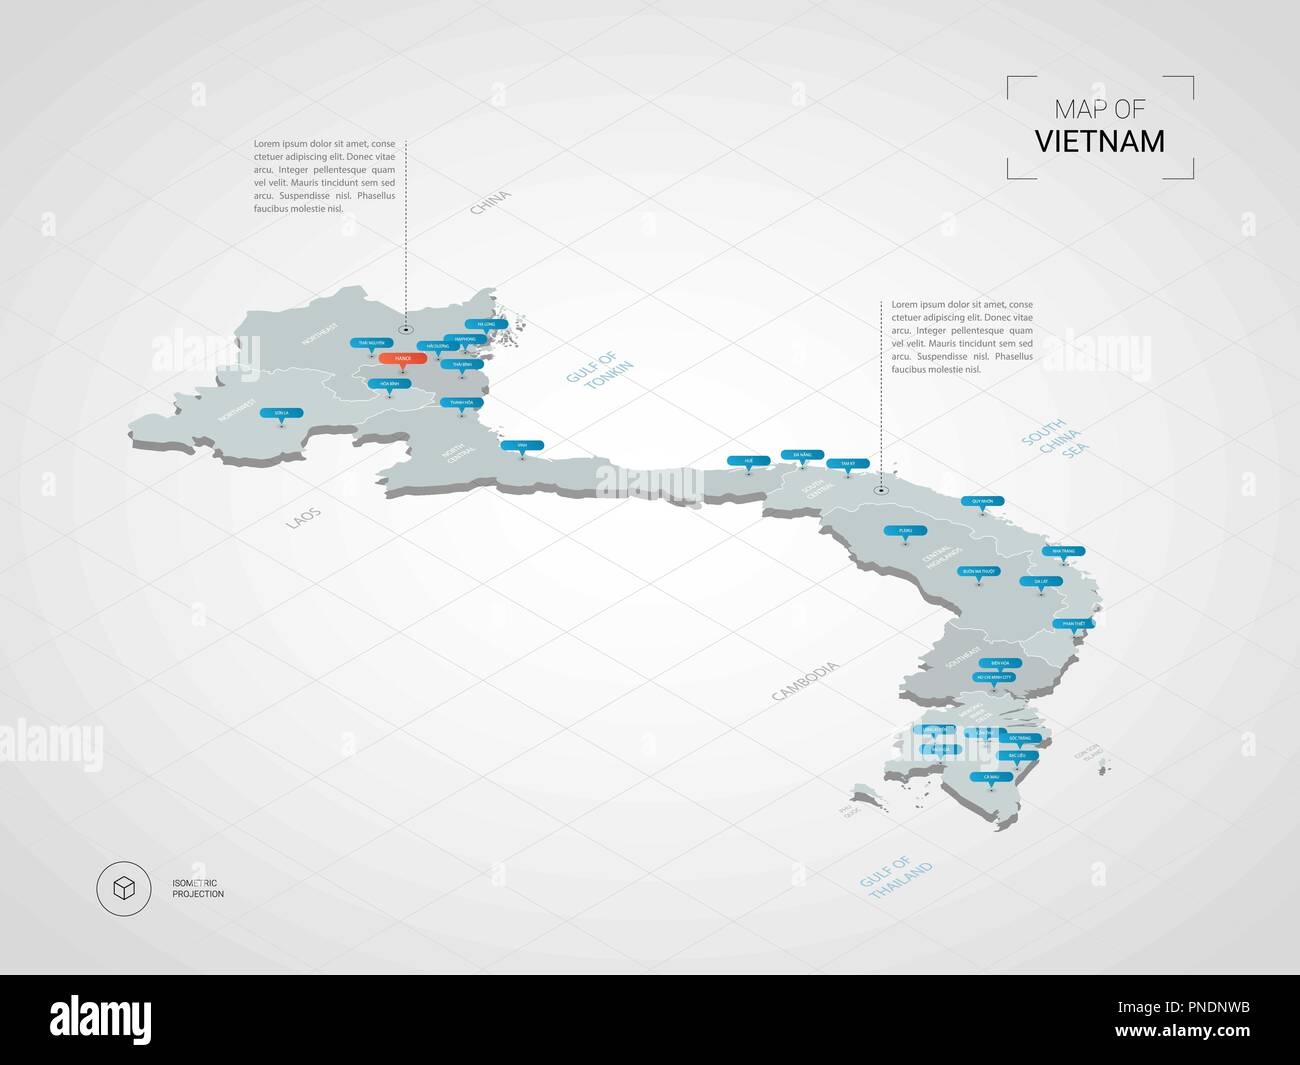 3D isométrique carte du Vietnam. Carte vectorielle illustration stylisée avec les villes, les frontières, les capitaux, les divisions administratives et pointeur marques ; zone de gradient Illustration de Vecteur